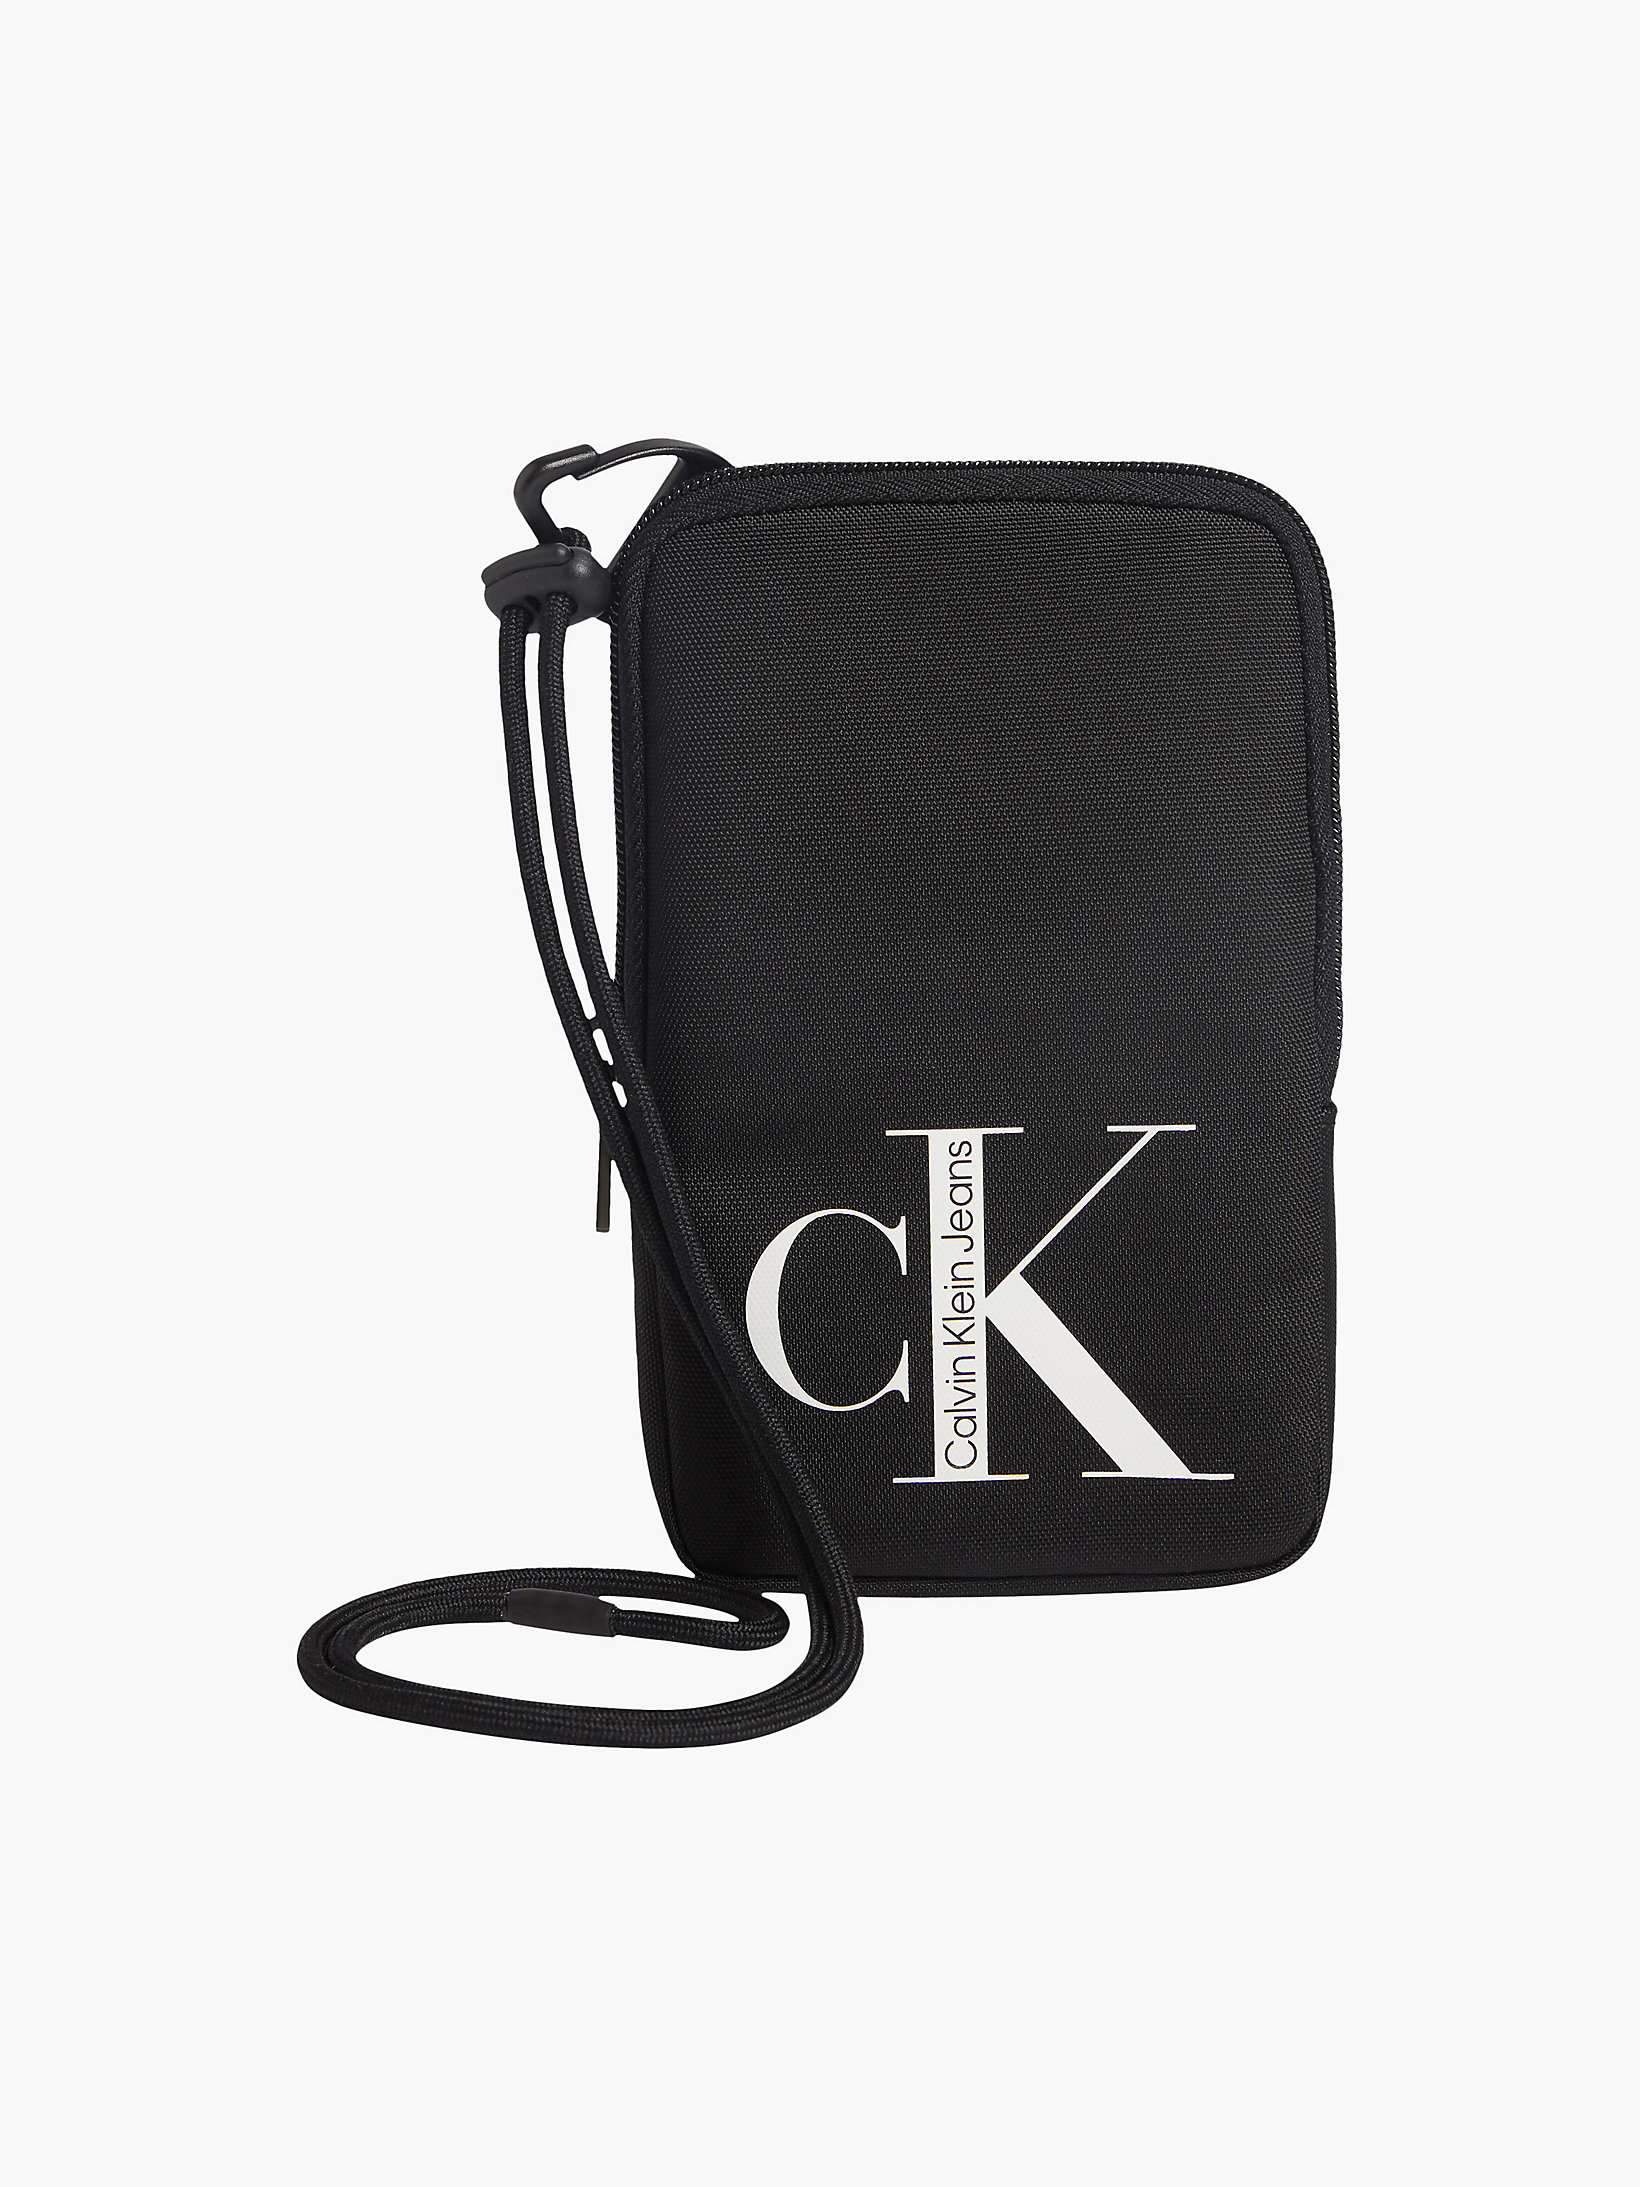 Calvin Klein Donna Accessori Borse Clutch Pochette a tracolla per iPhone ricilata 